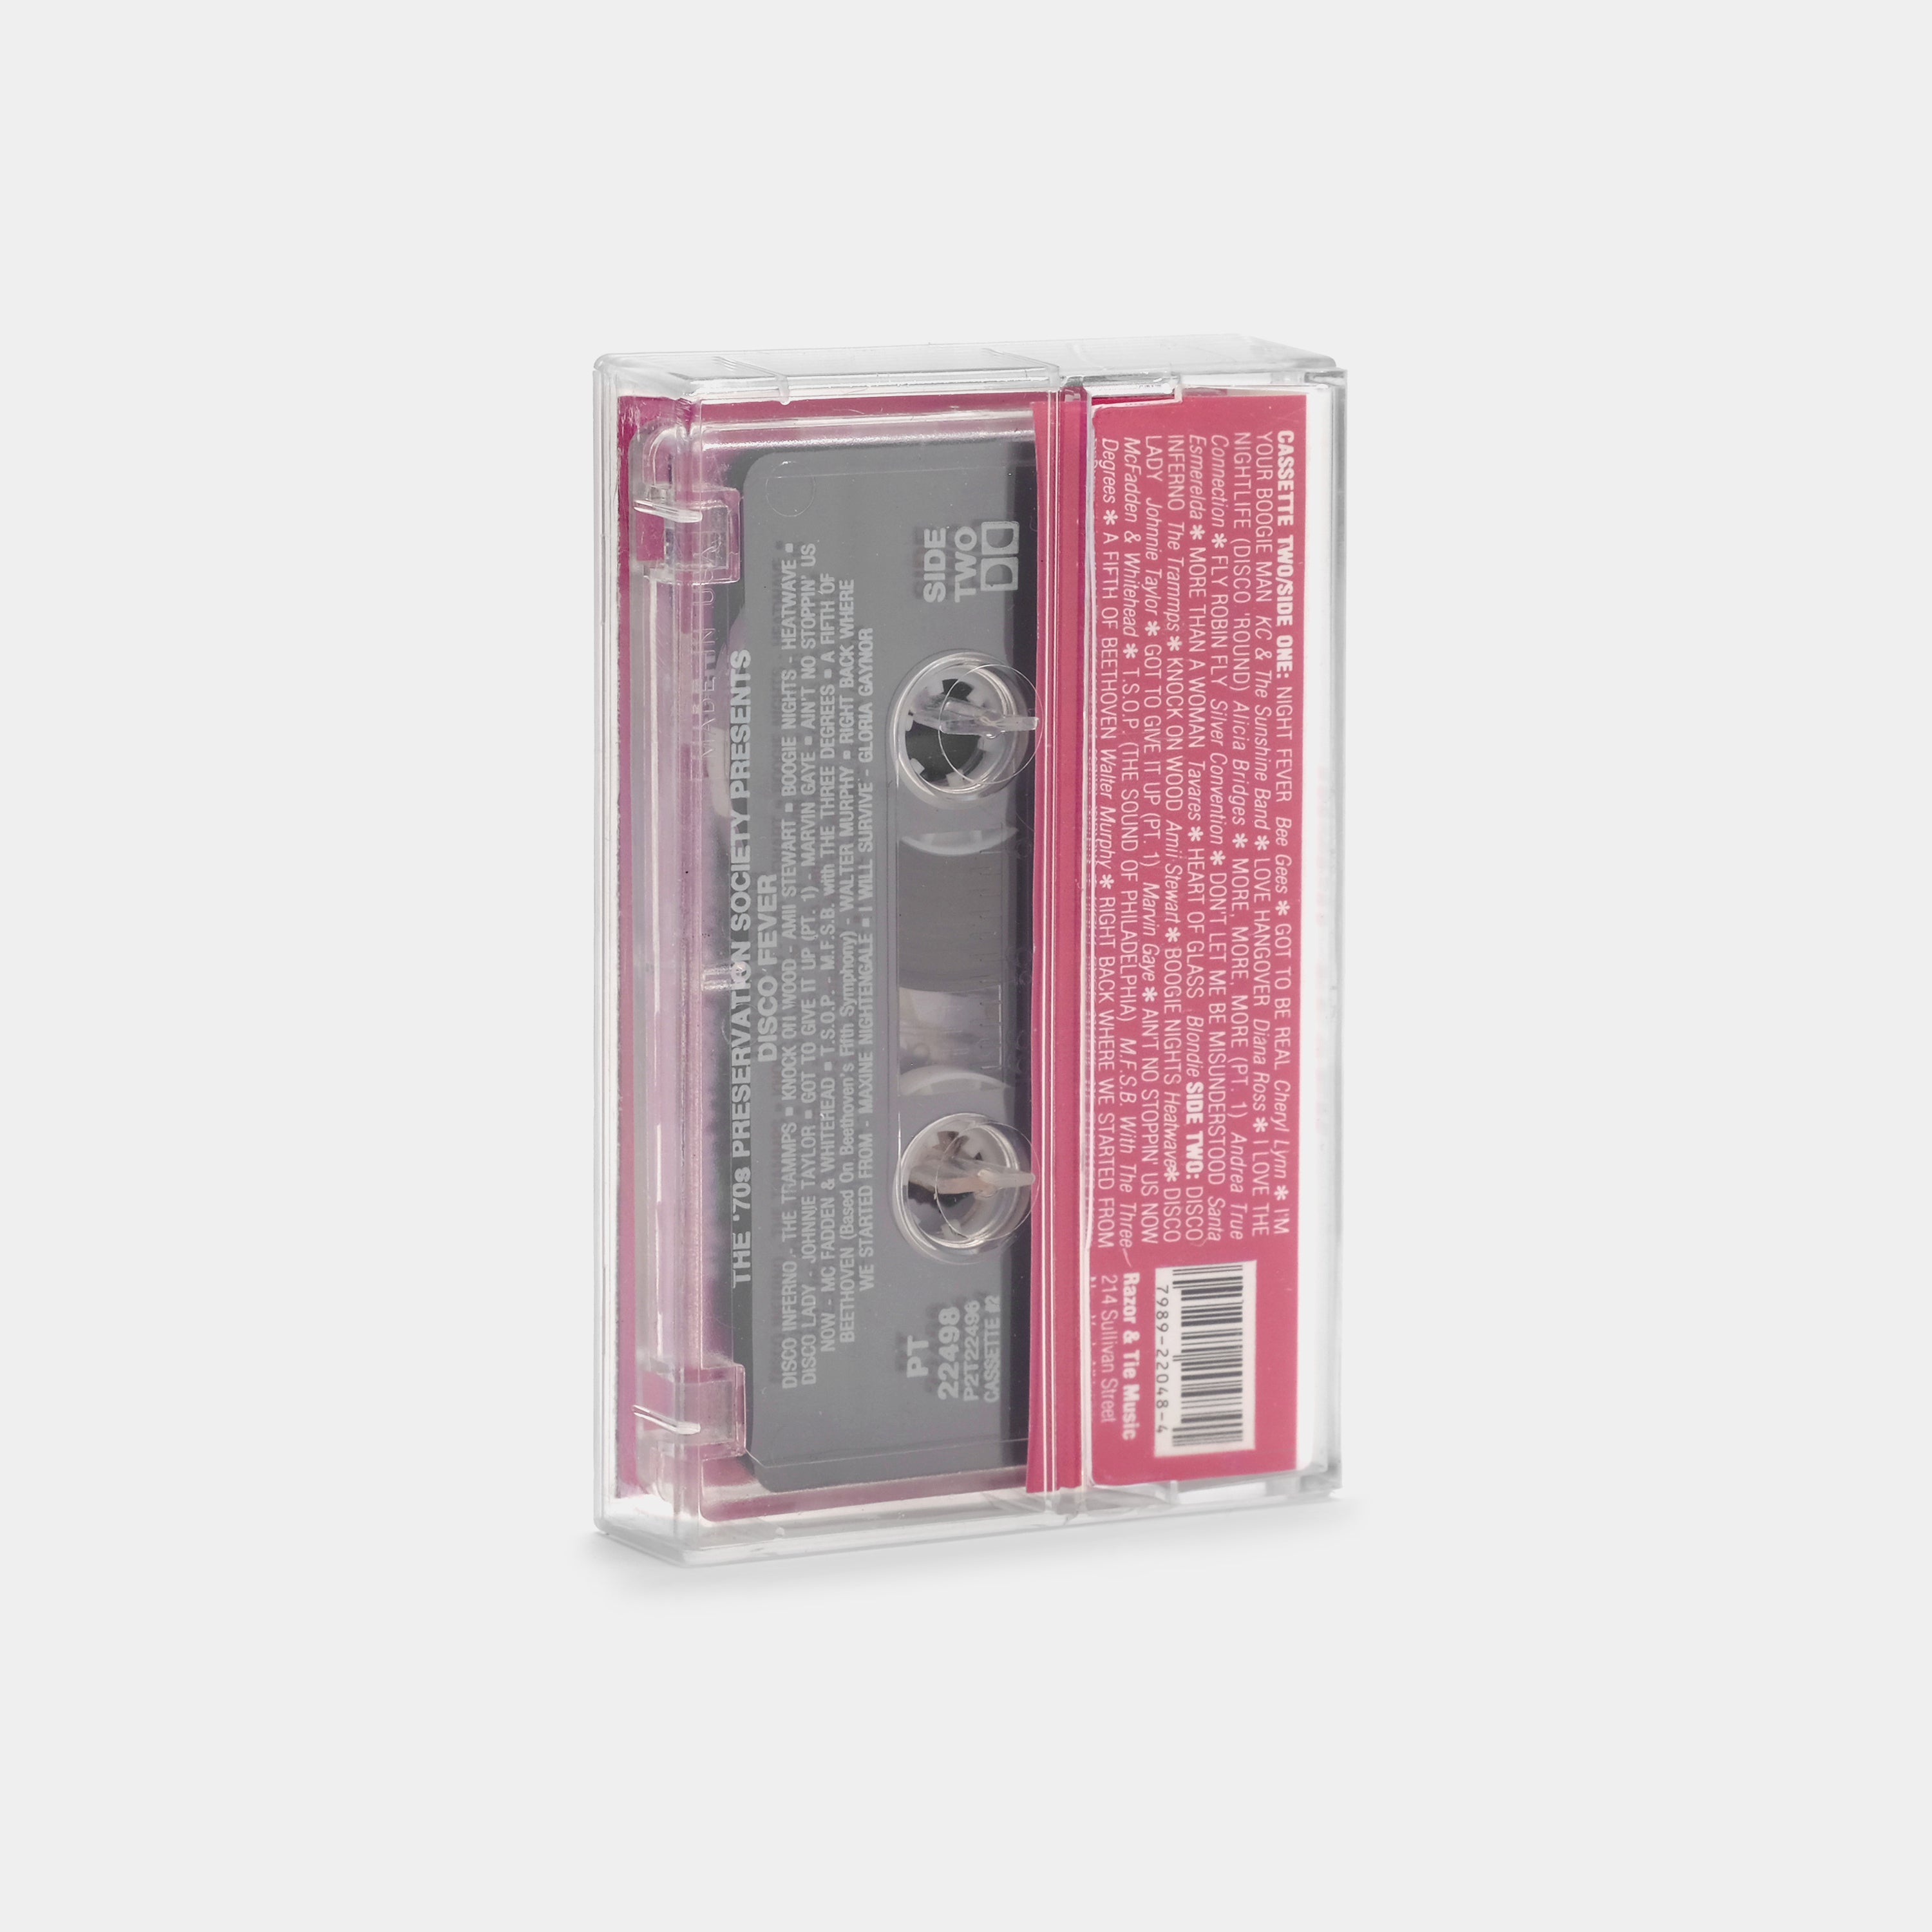 Disco Fever (Tape 2) Cassette Tape